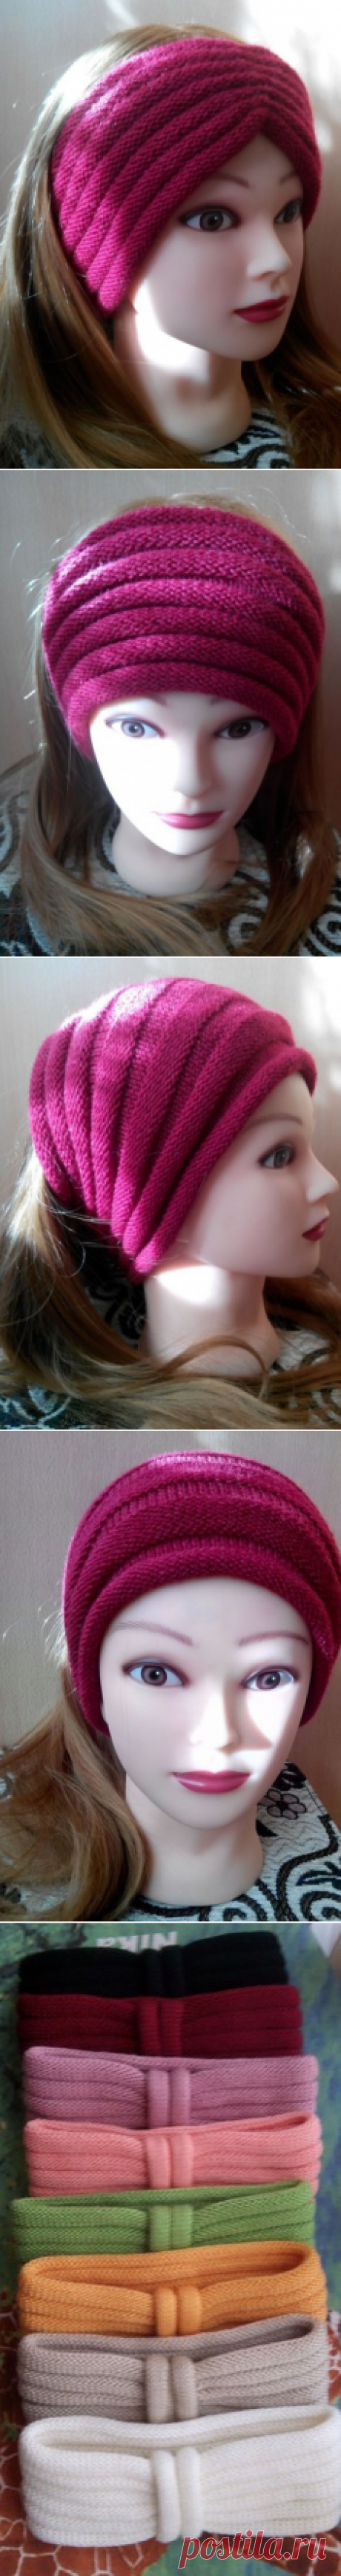 Женские головные повязки – купить в интернет-магазине HobbyPortal.ru с доставкой